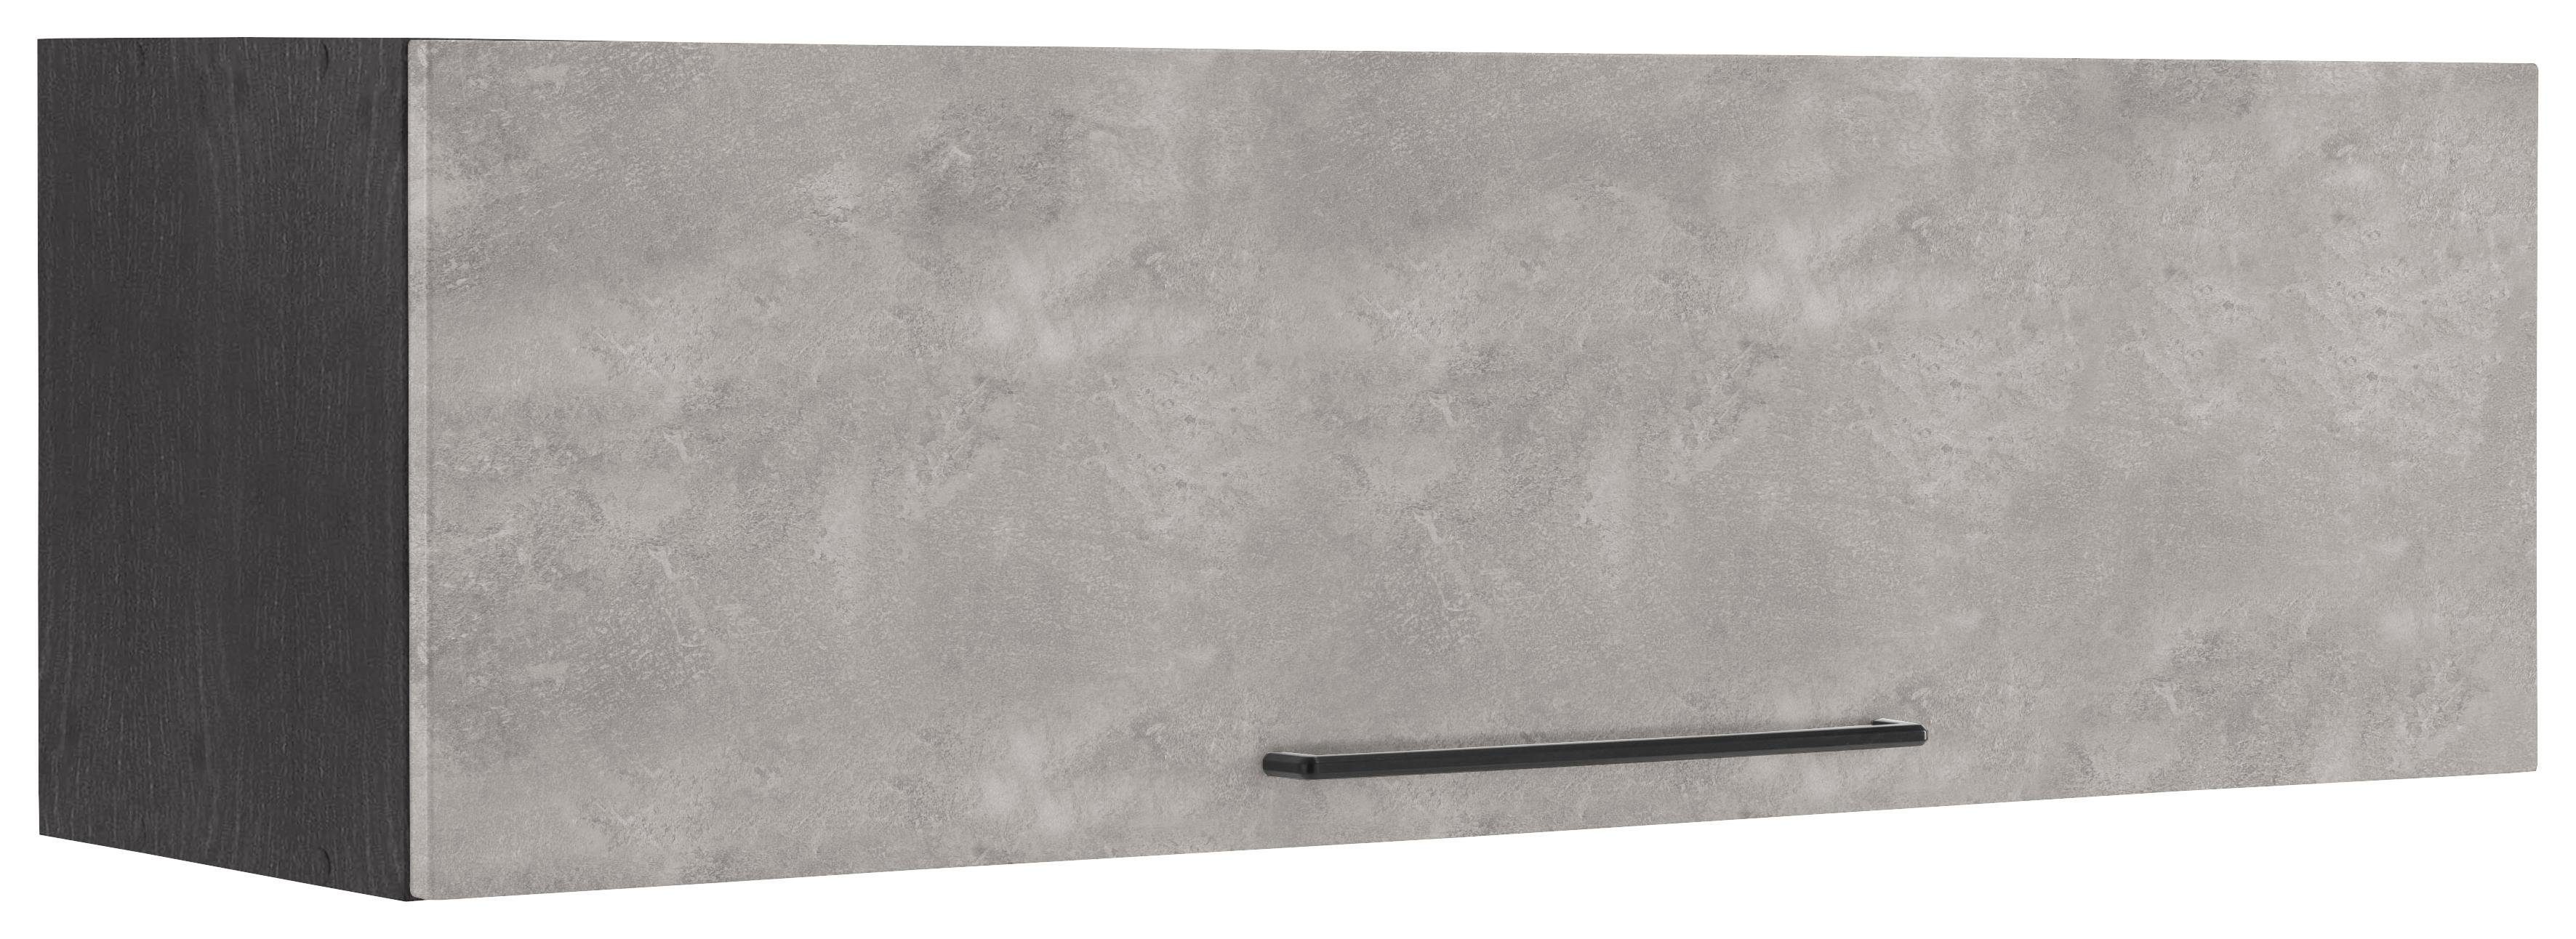 HELD MÖBEL Klapphängeschrank Tulsa 110 cm breit, mit 1 Klappe, schwarzer Metallgriff, MDF Front betonfarben hell | grafit